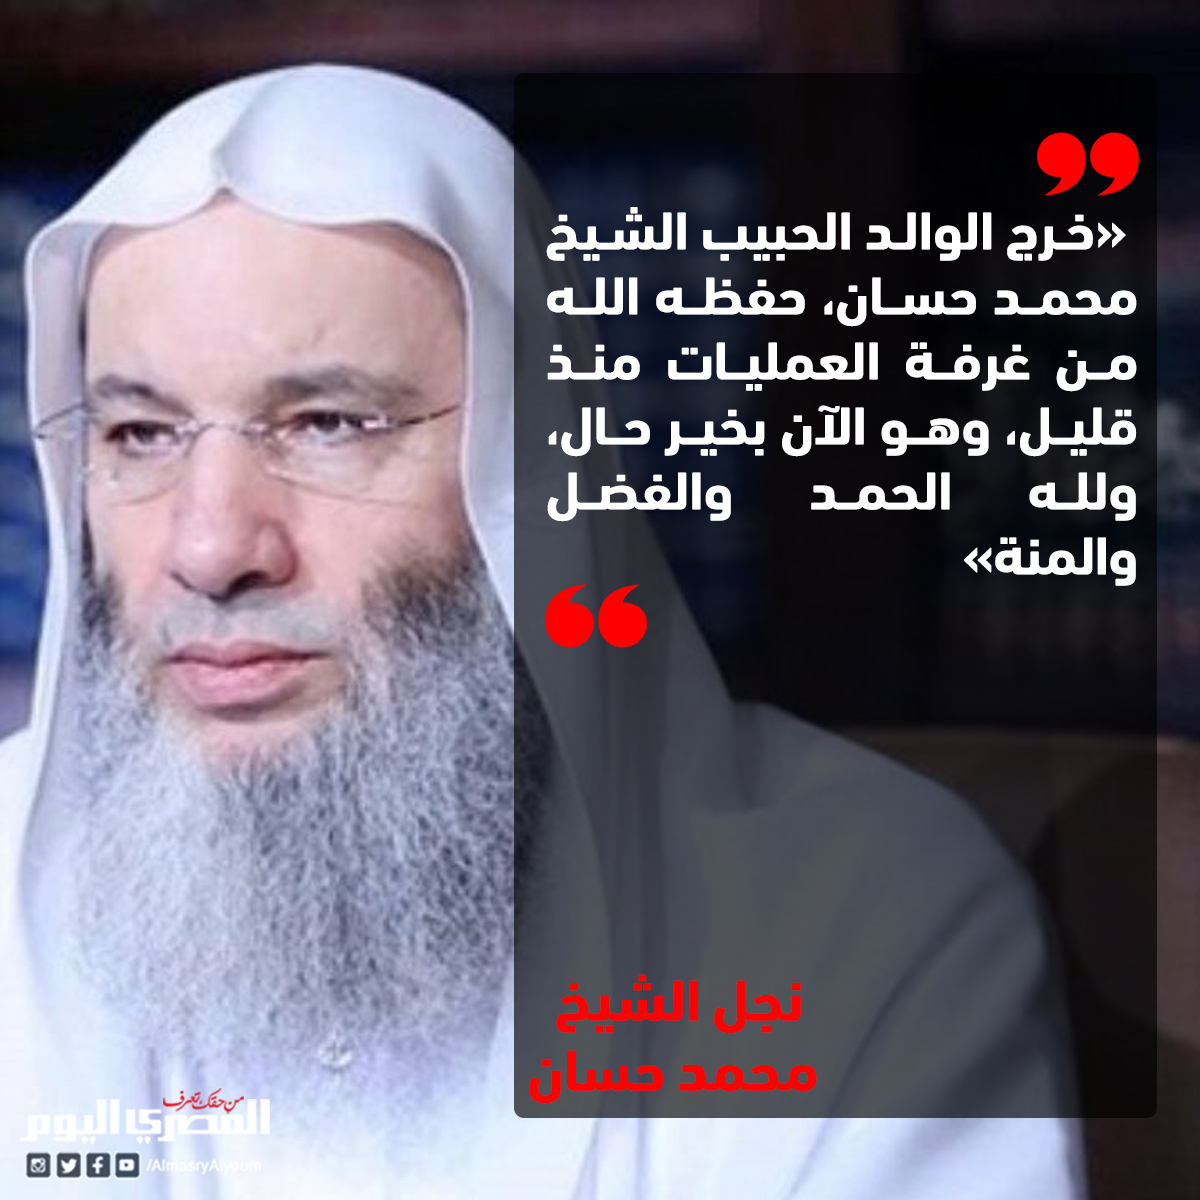 نجل الشيخ محمد حسان يكشف تطورات حالة والده «نسأل الله أن يرده إلى دعوته»